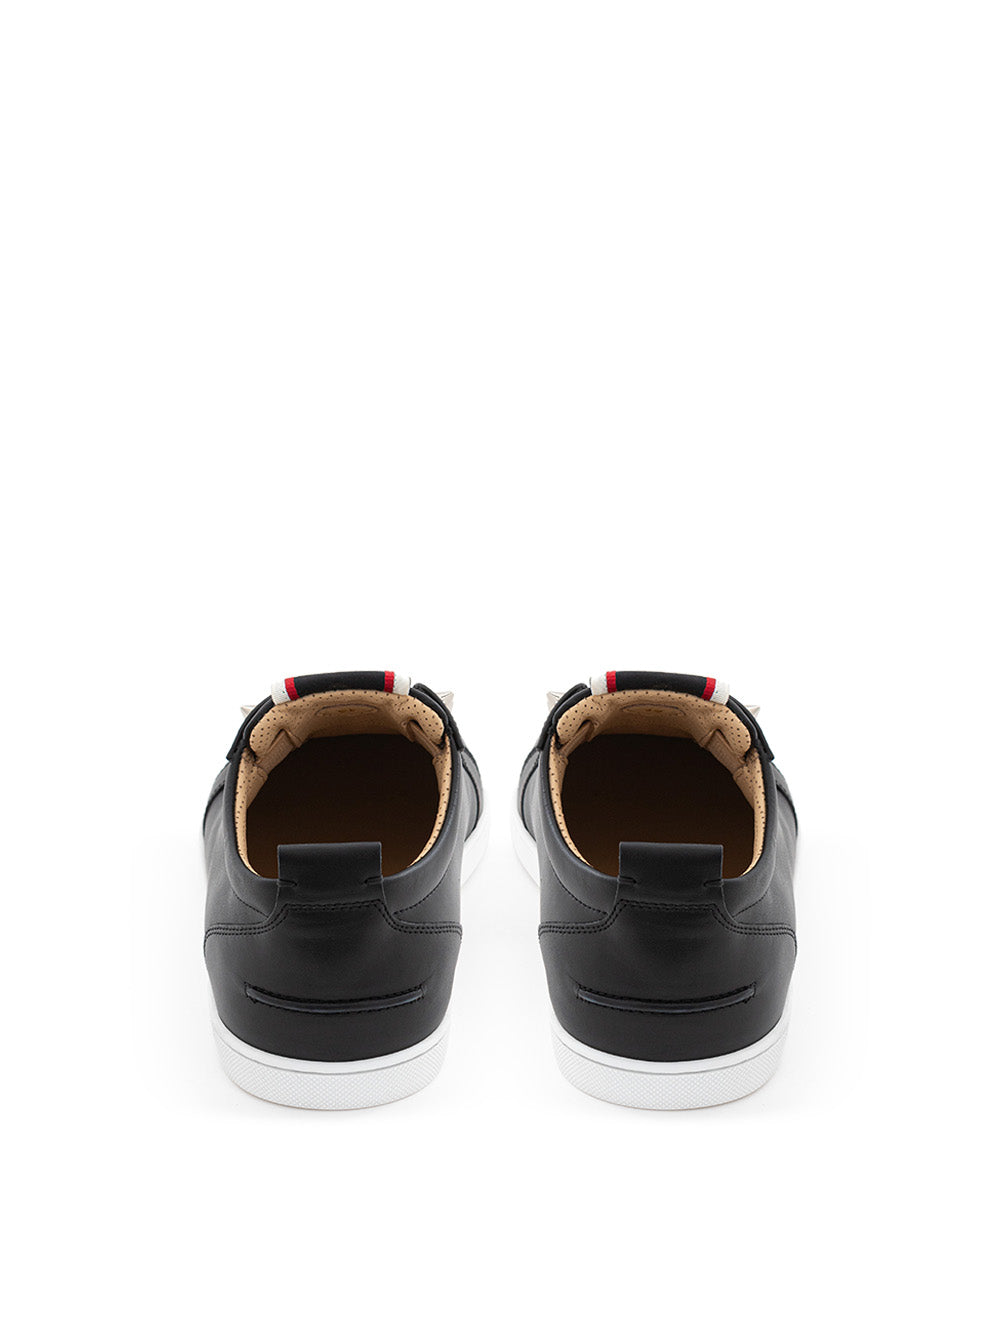 Sleek Black Leather Sneakers